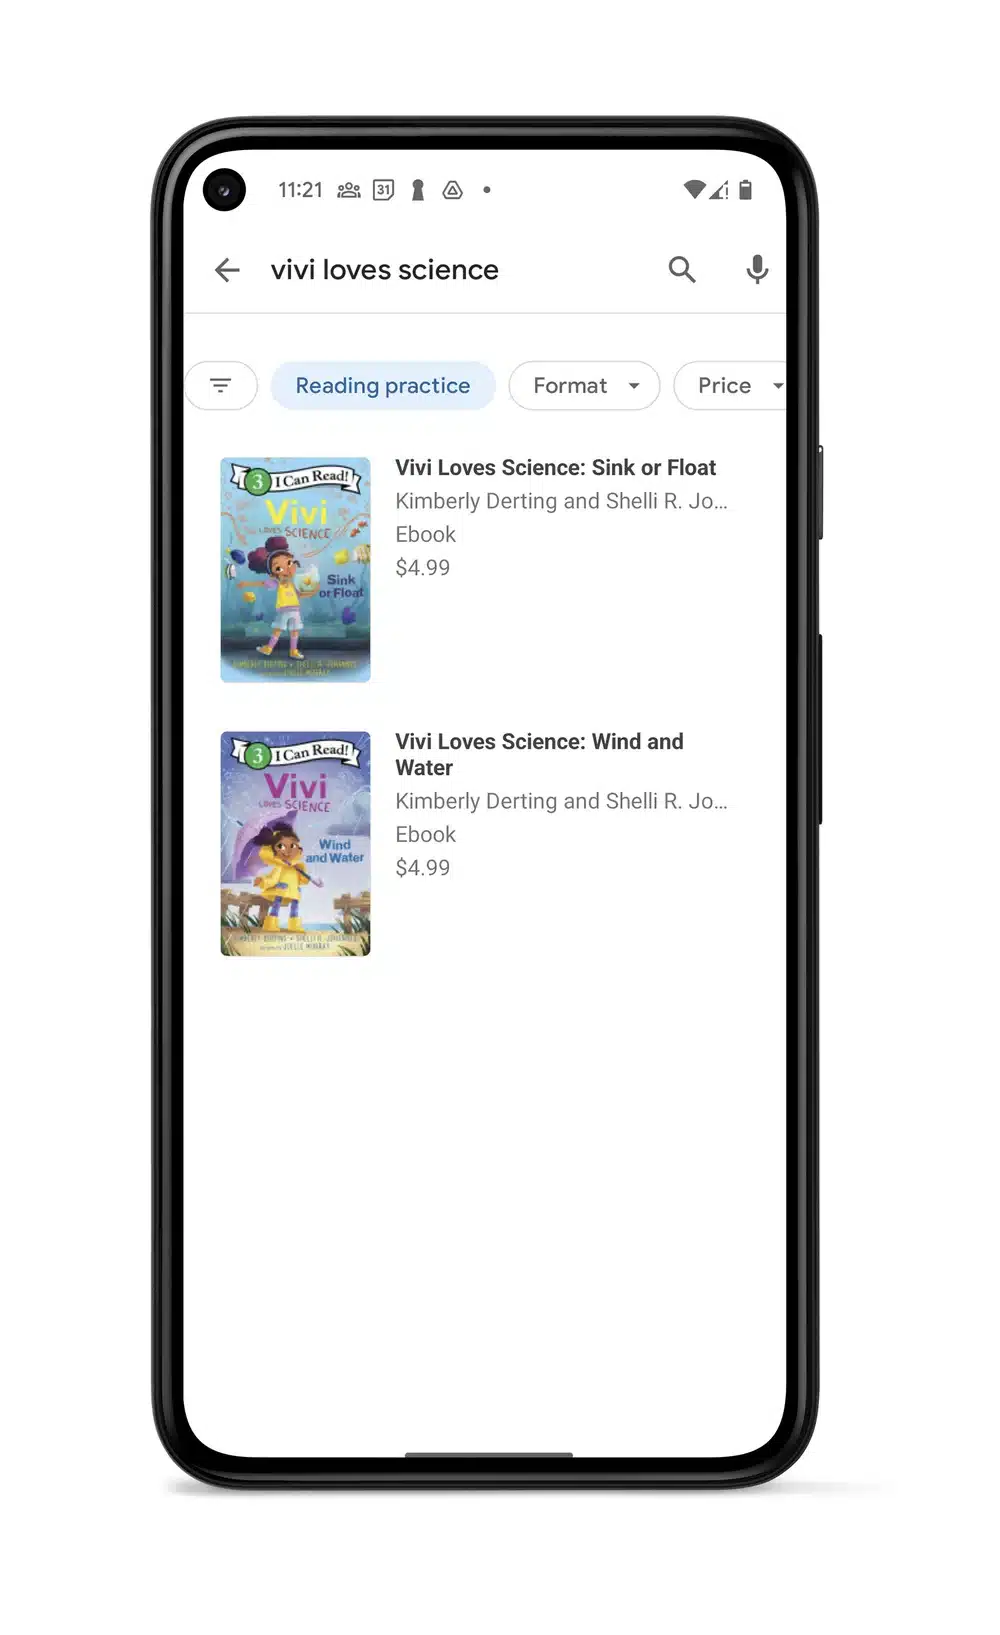 جوجل تطلق ميزة جديدة لتدريب الأطفال على القراءة والتهجي - صورة توضيحية لاستخدام الميزة على متجر جوجل بلاي